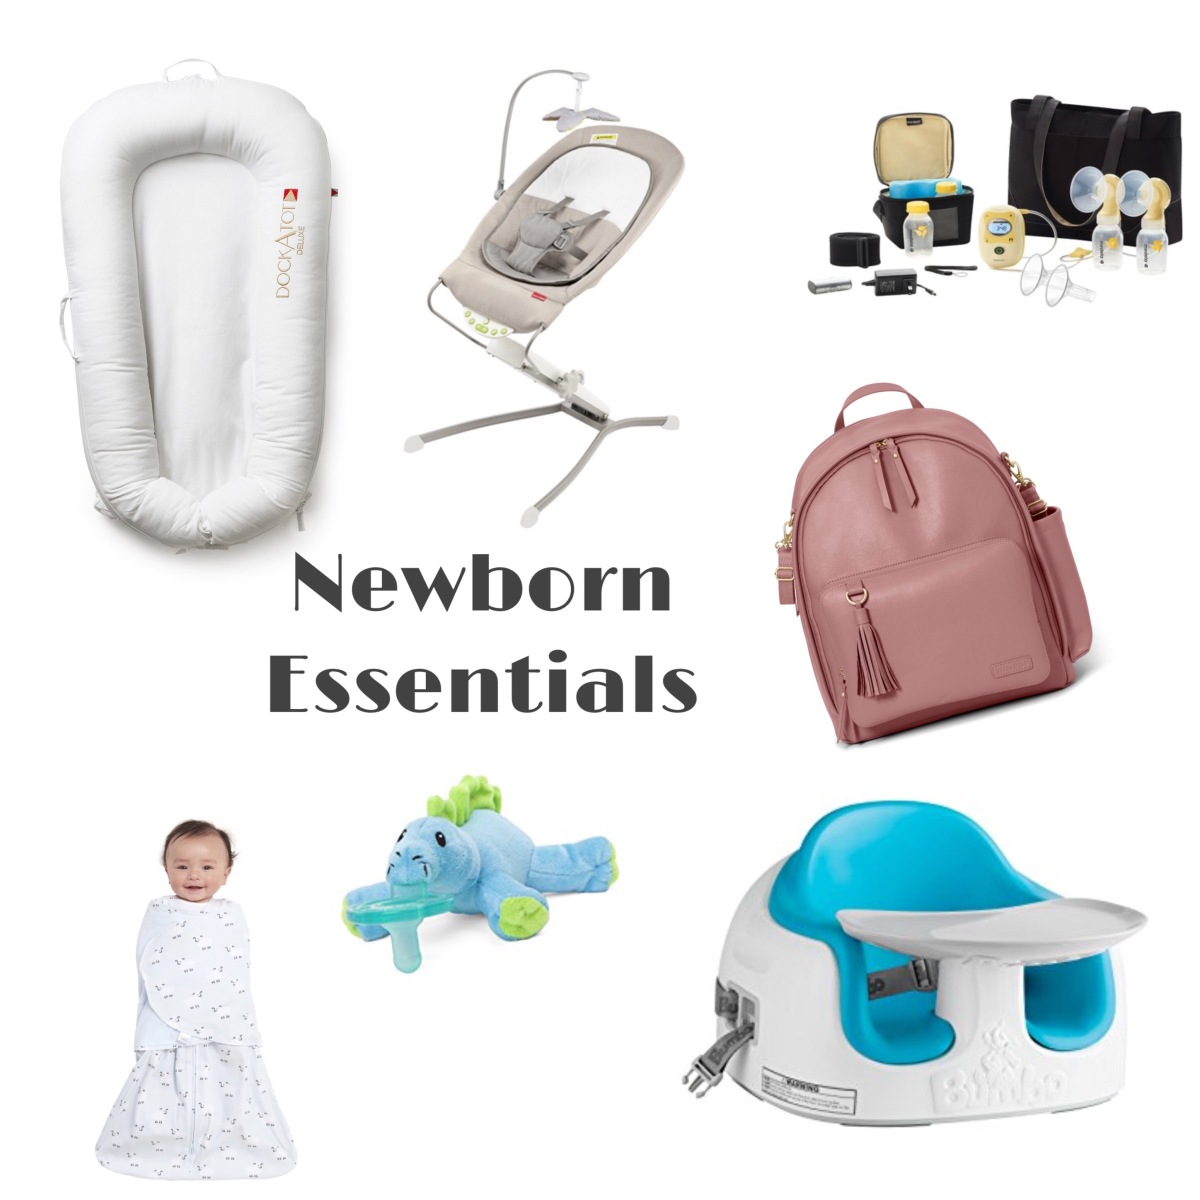 Whats In My Cart Wednesday – Newborn Essentials